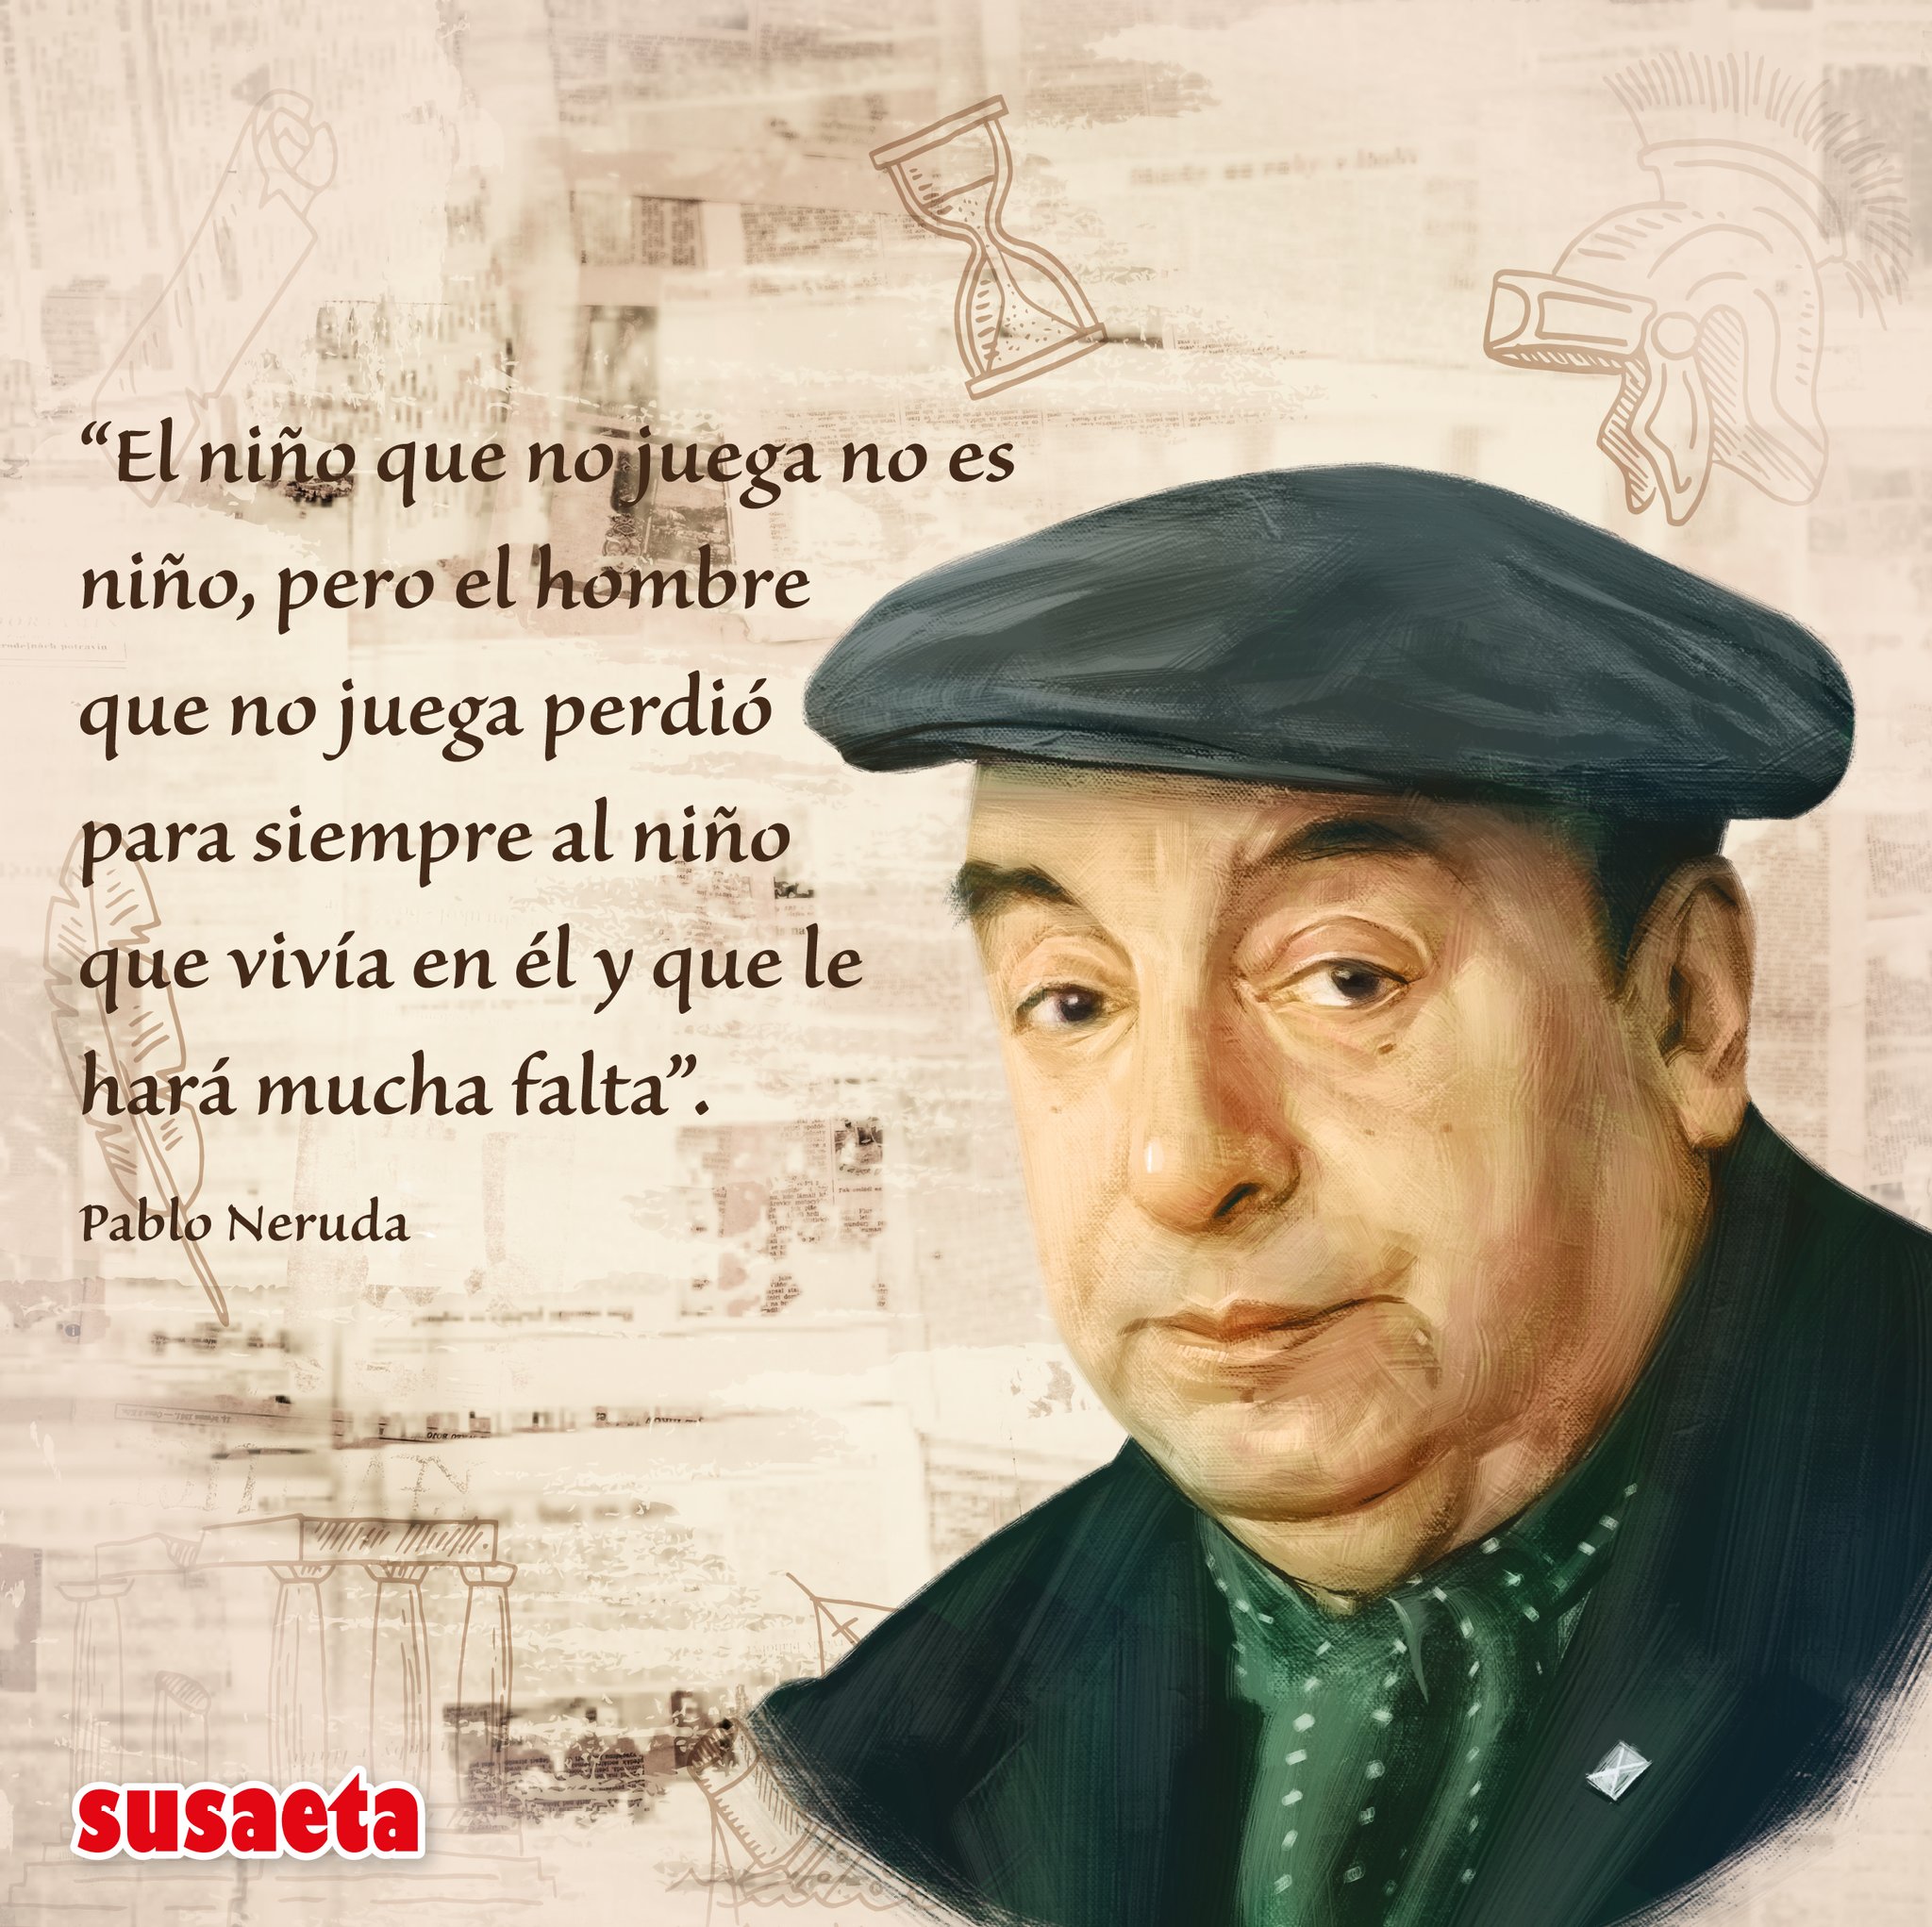 Panamá on Twitter: "Pablo Neruda fue un poeta y político chileno quien se le otorgó el premio Nobel de Literatura 1971. Entre sus obras más célebres está Veinte poemas